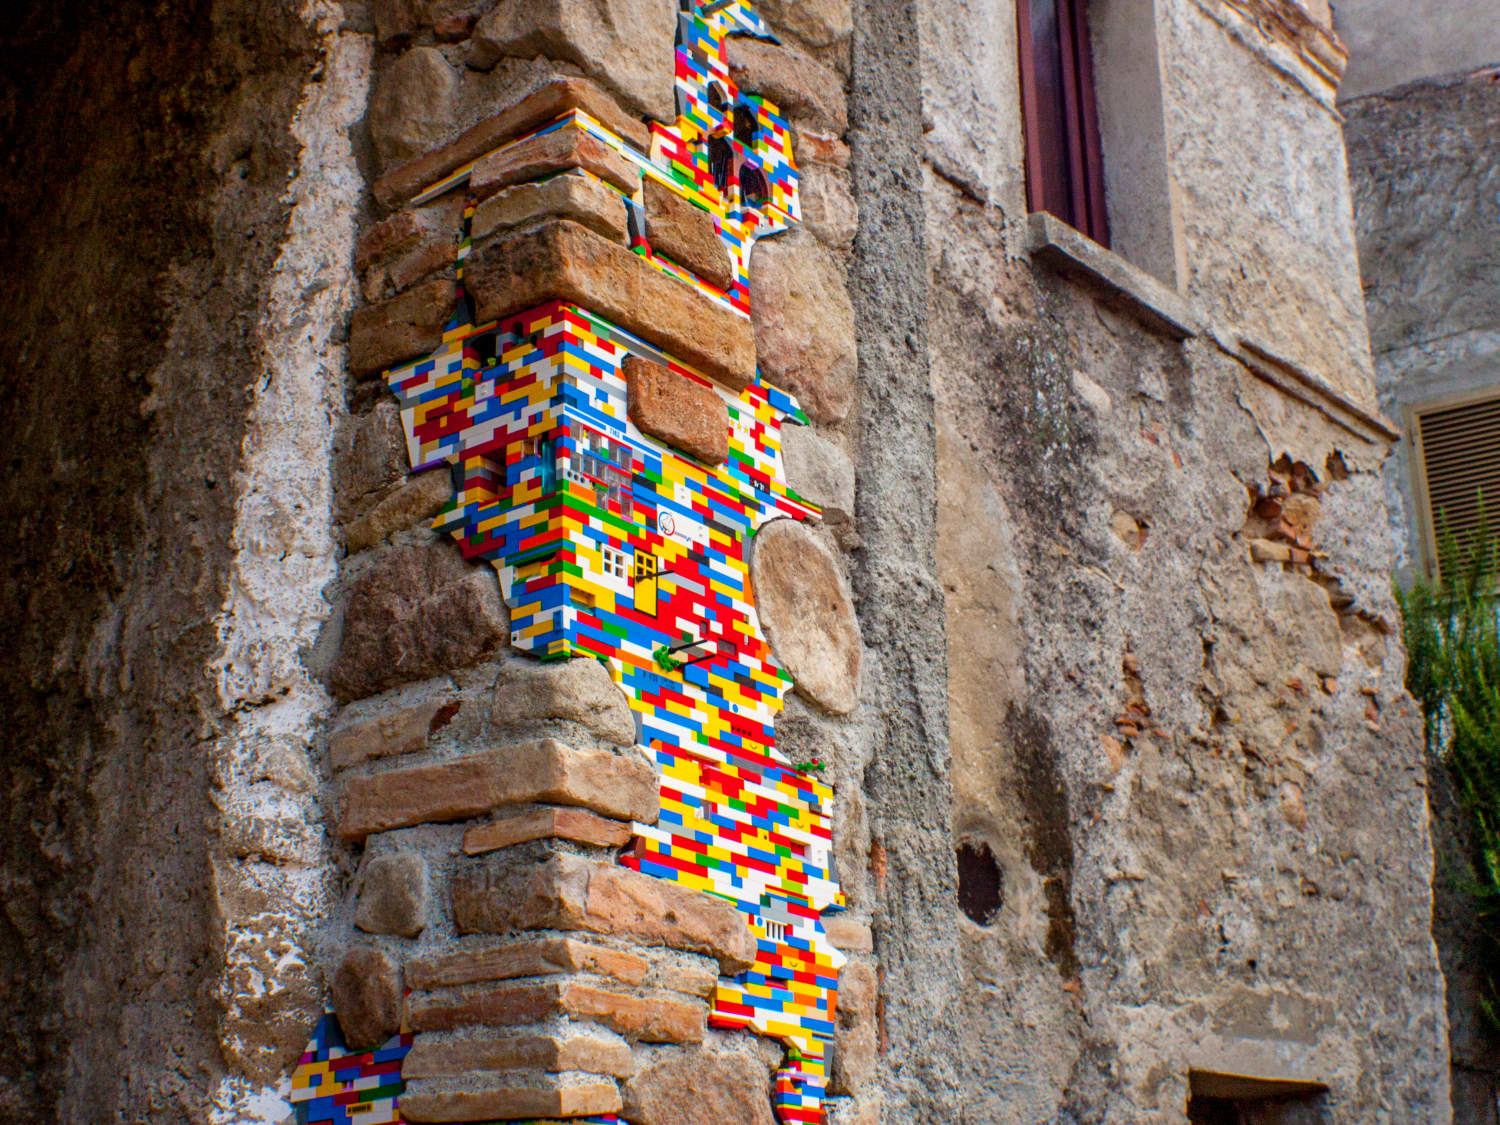 LEGO Artist Explains How to Glue Bricks 